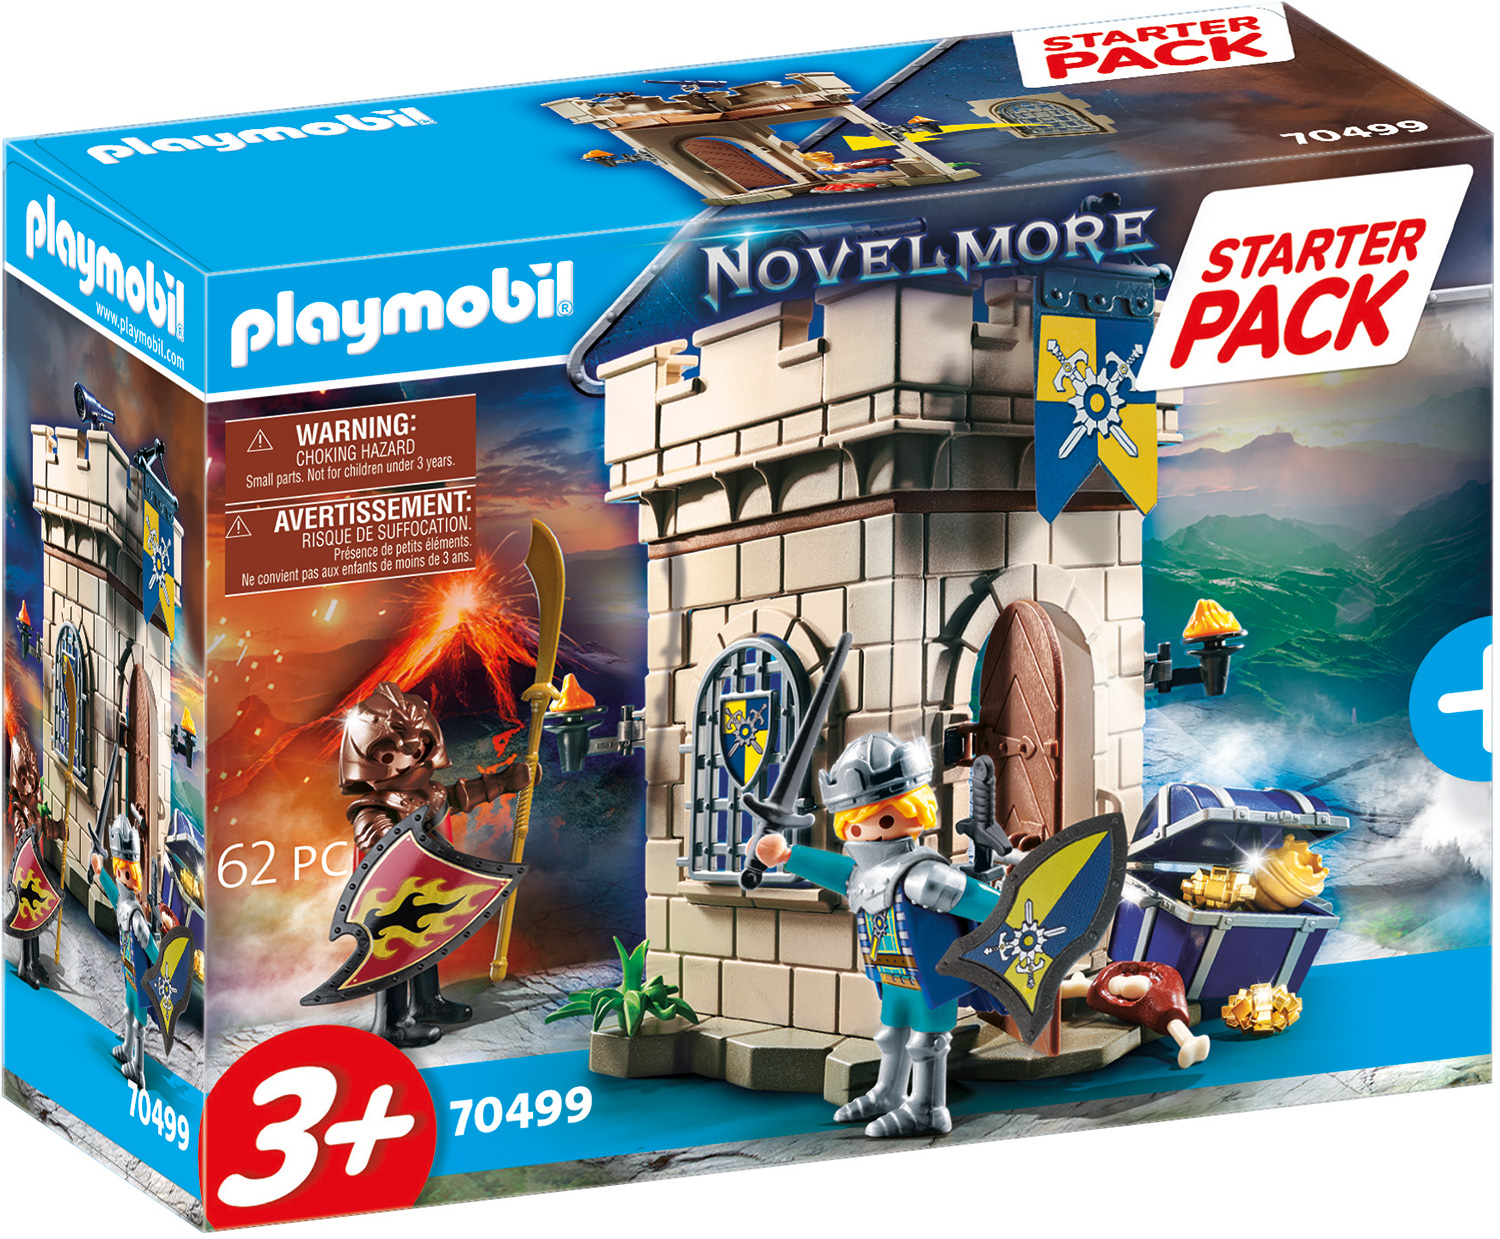 PLAYMOBIL 70499 Starter Pack Novelmore